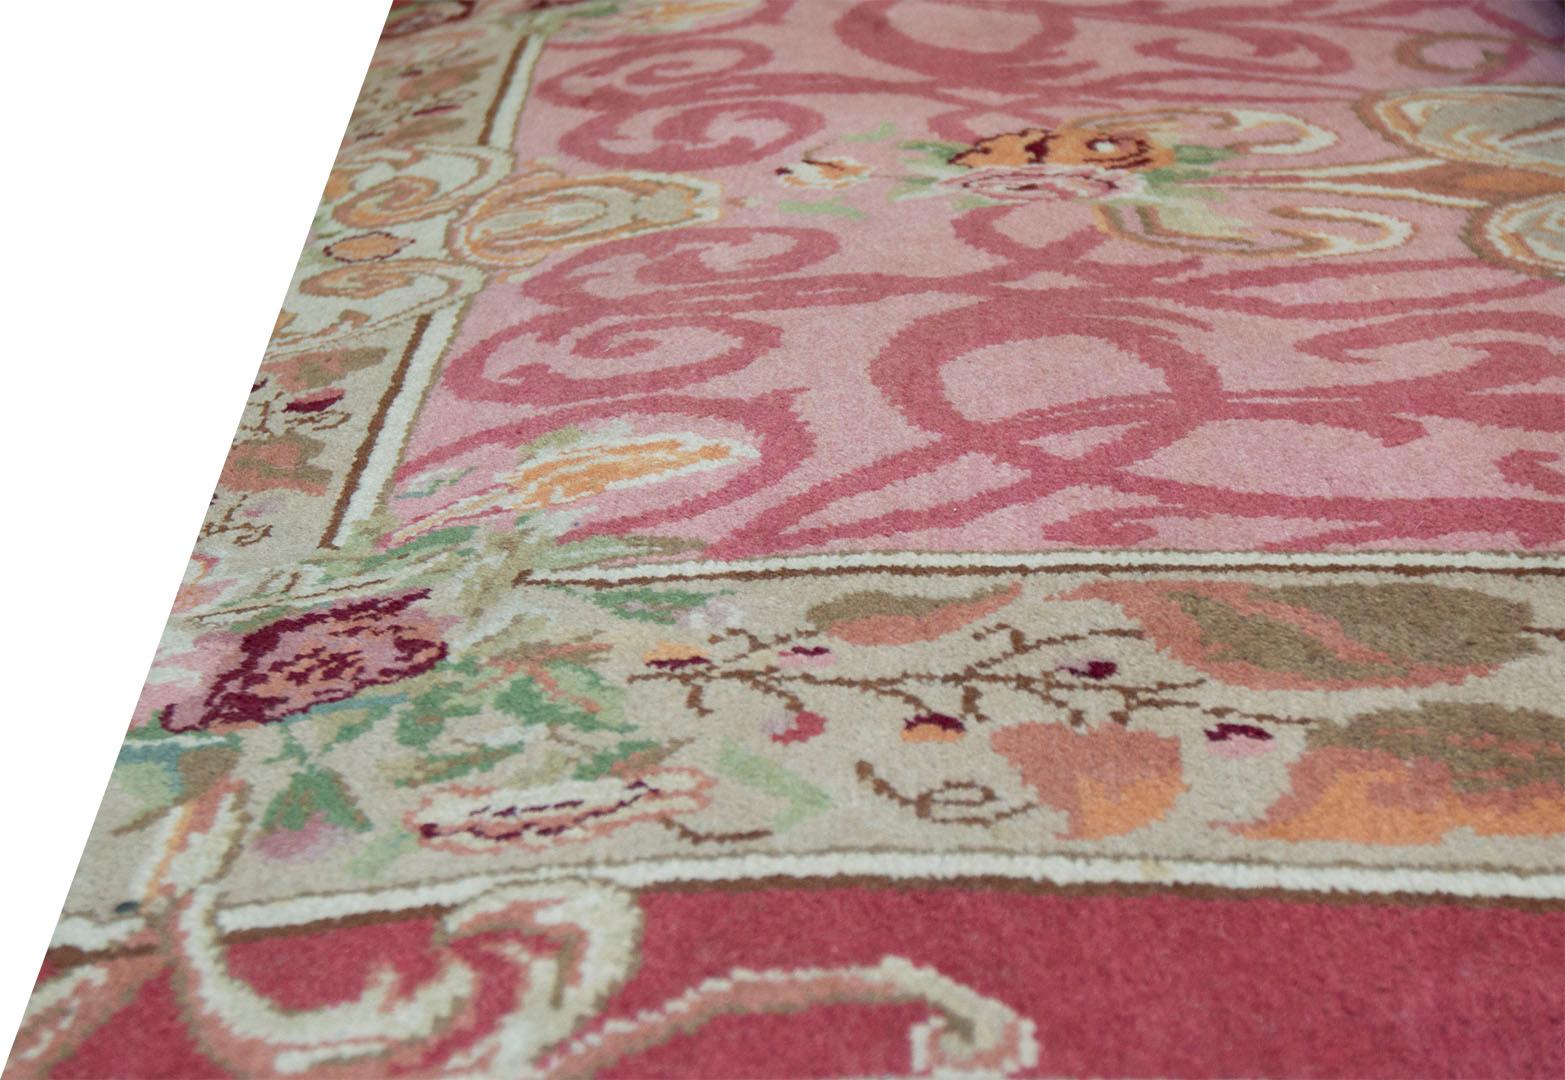 Hochwertiger Teppich, hergestellt in Rumänien. Dieses prächtige Kunstwerk zeigt ein von der französischen Savonnerie inspiriertes Design mit einer meisterhaften Farbgebung. Flor aus 100% natürlicher Wolle. Brandneu.